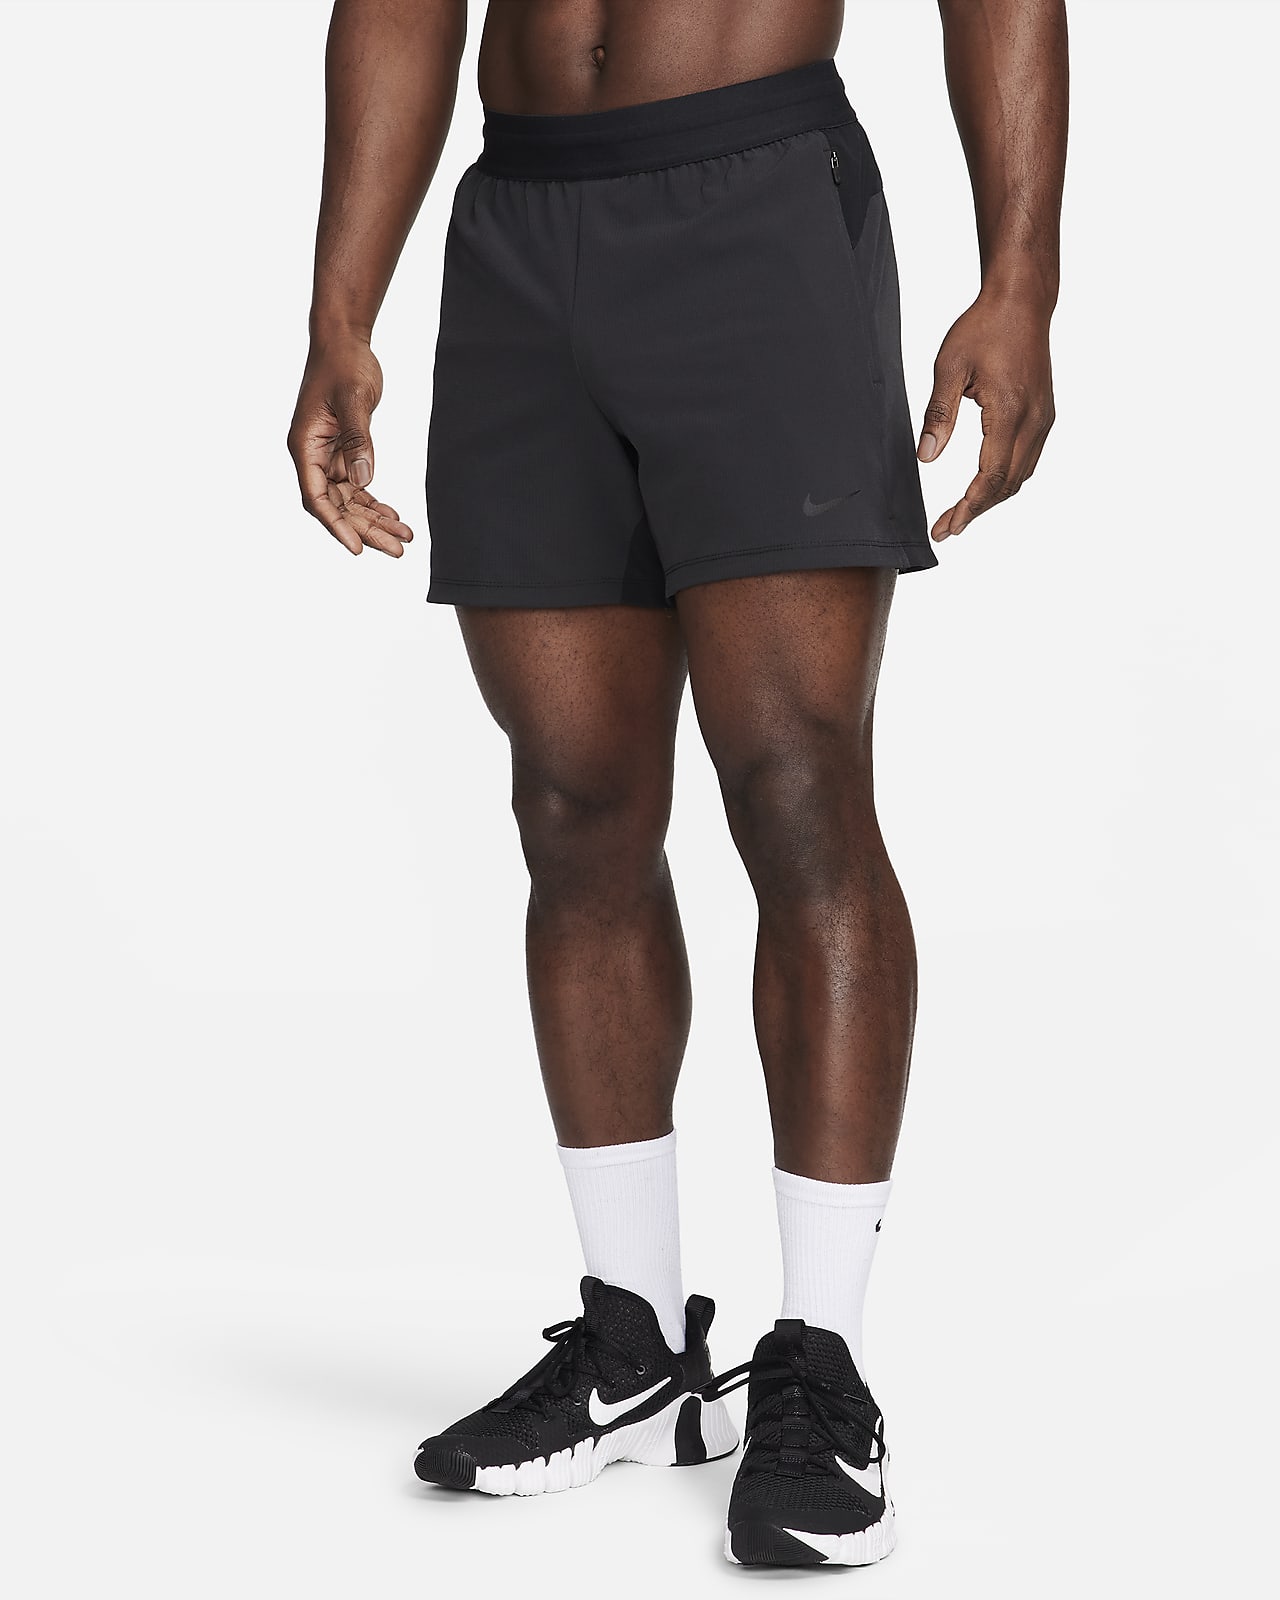 Shorts Nike 5.0 Masculino Cinza - 00194277437802